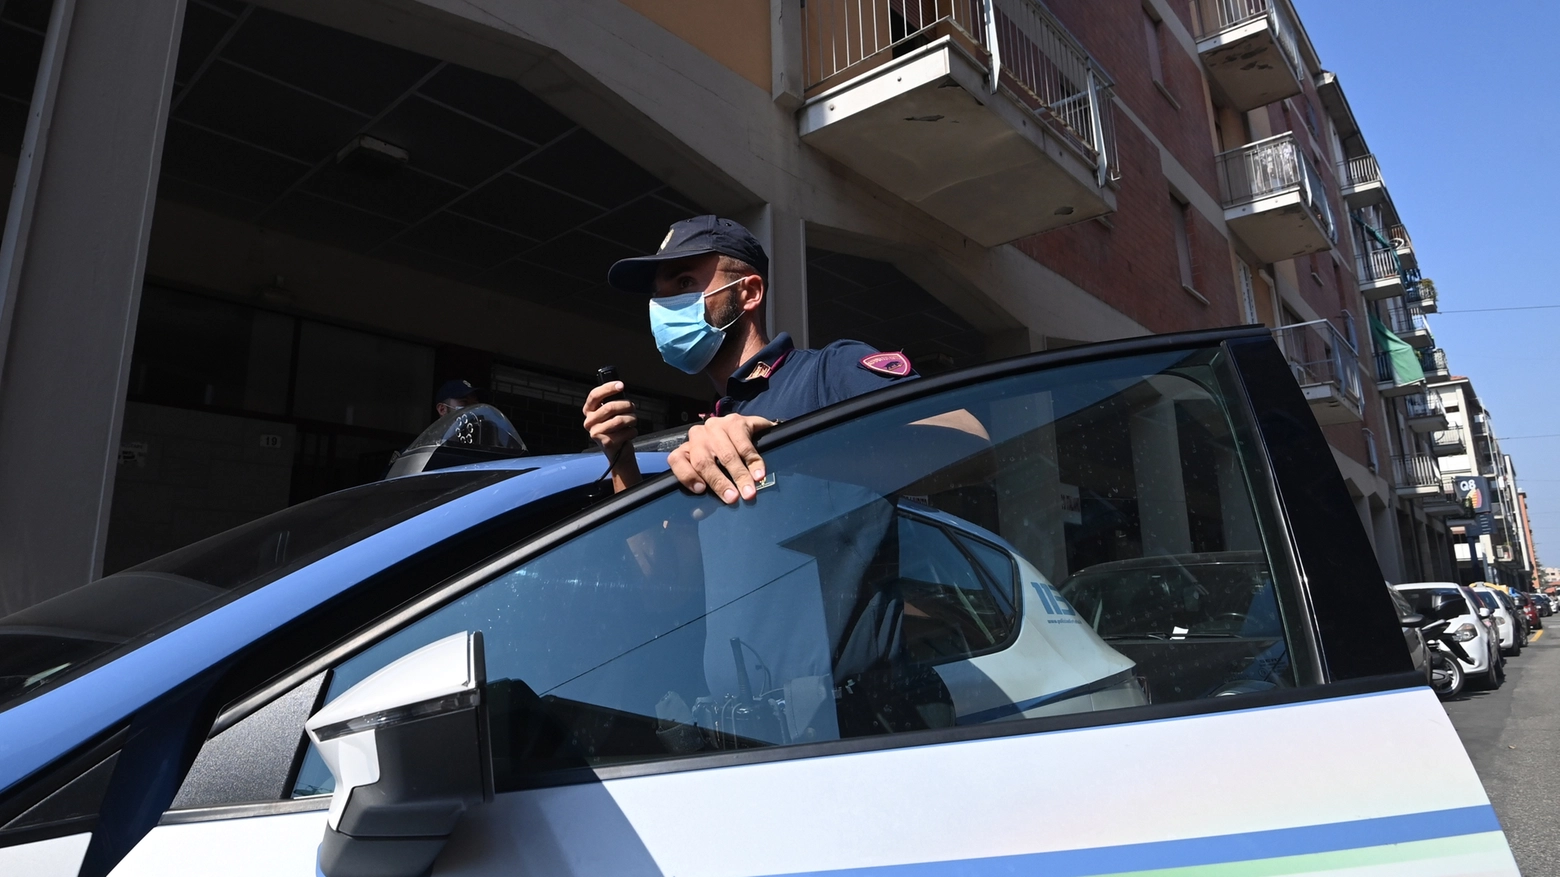 Bologna, il giovane è stato arrestato per tentata rapina aggravata (FotoSchicchi)